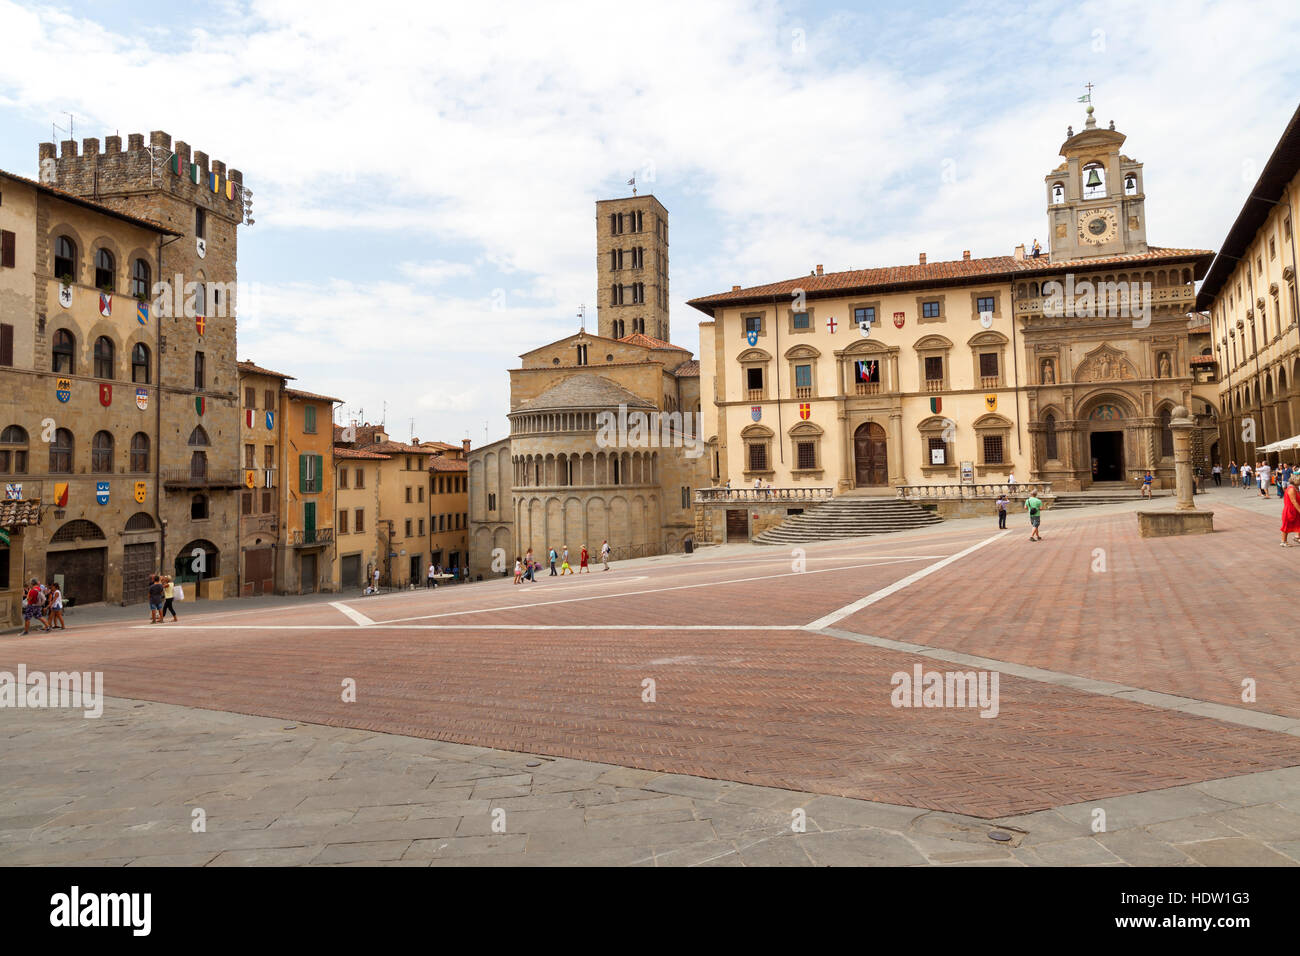 La Piazza principale d'Arezzo et l'église Pieve di Santa Maria de Toscana. Italie. Banque D'Images